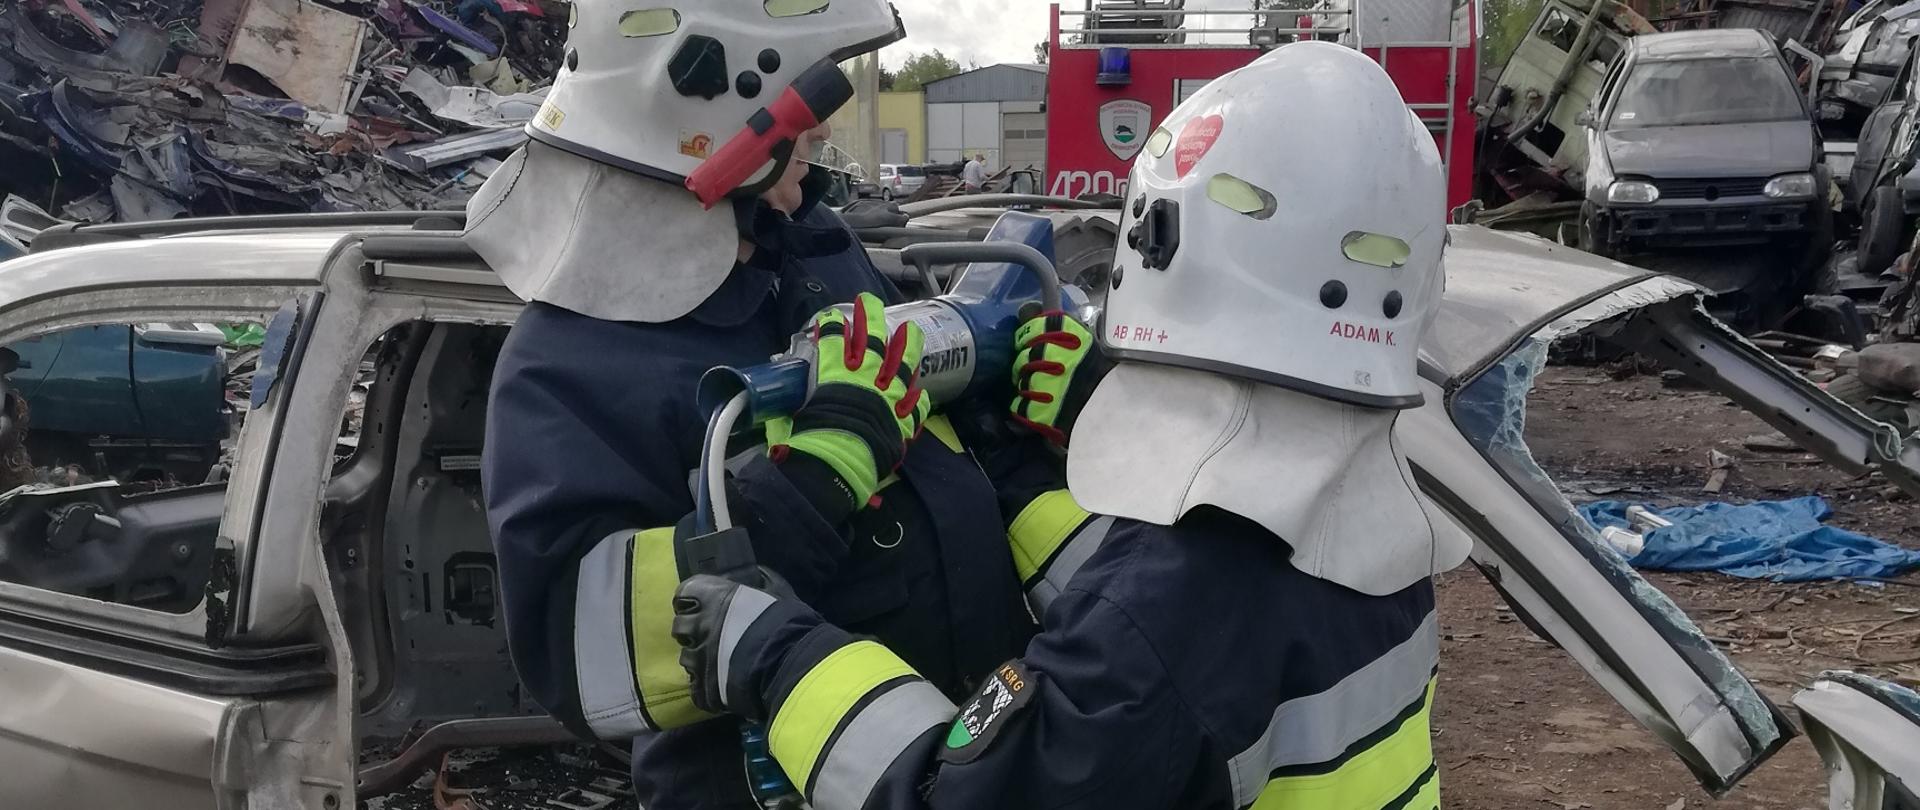 Na złomowisku dwóch strażaków przecina karoserię samochodu osobowego